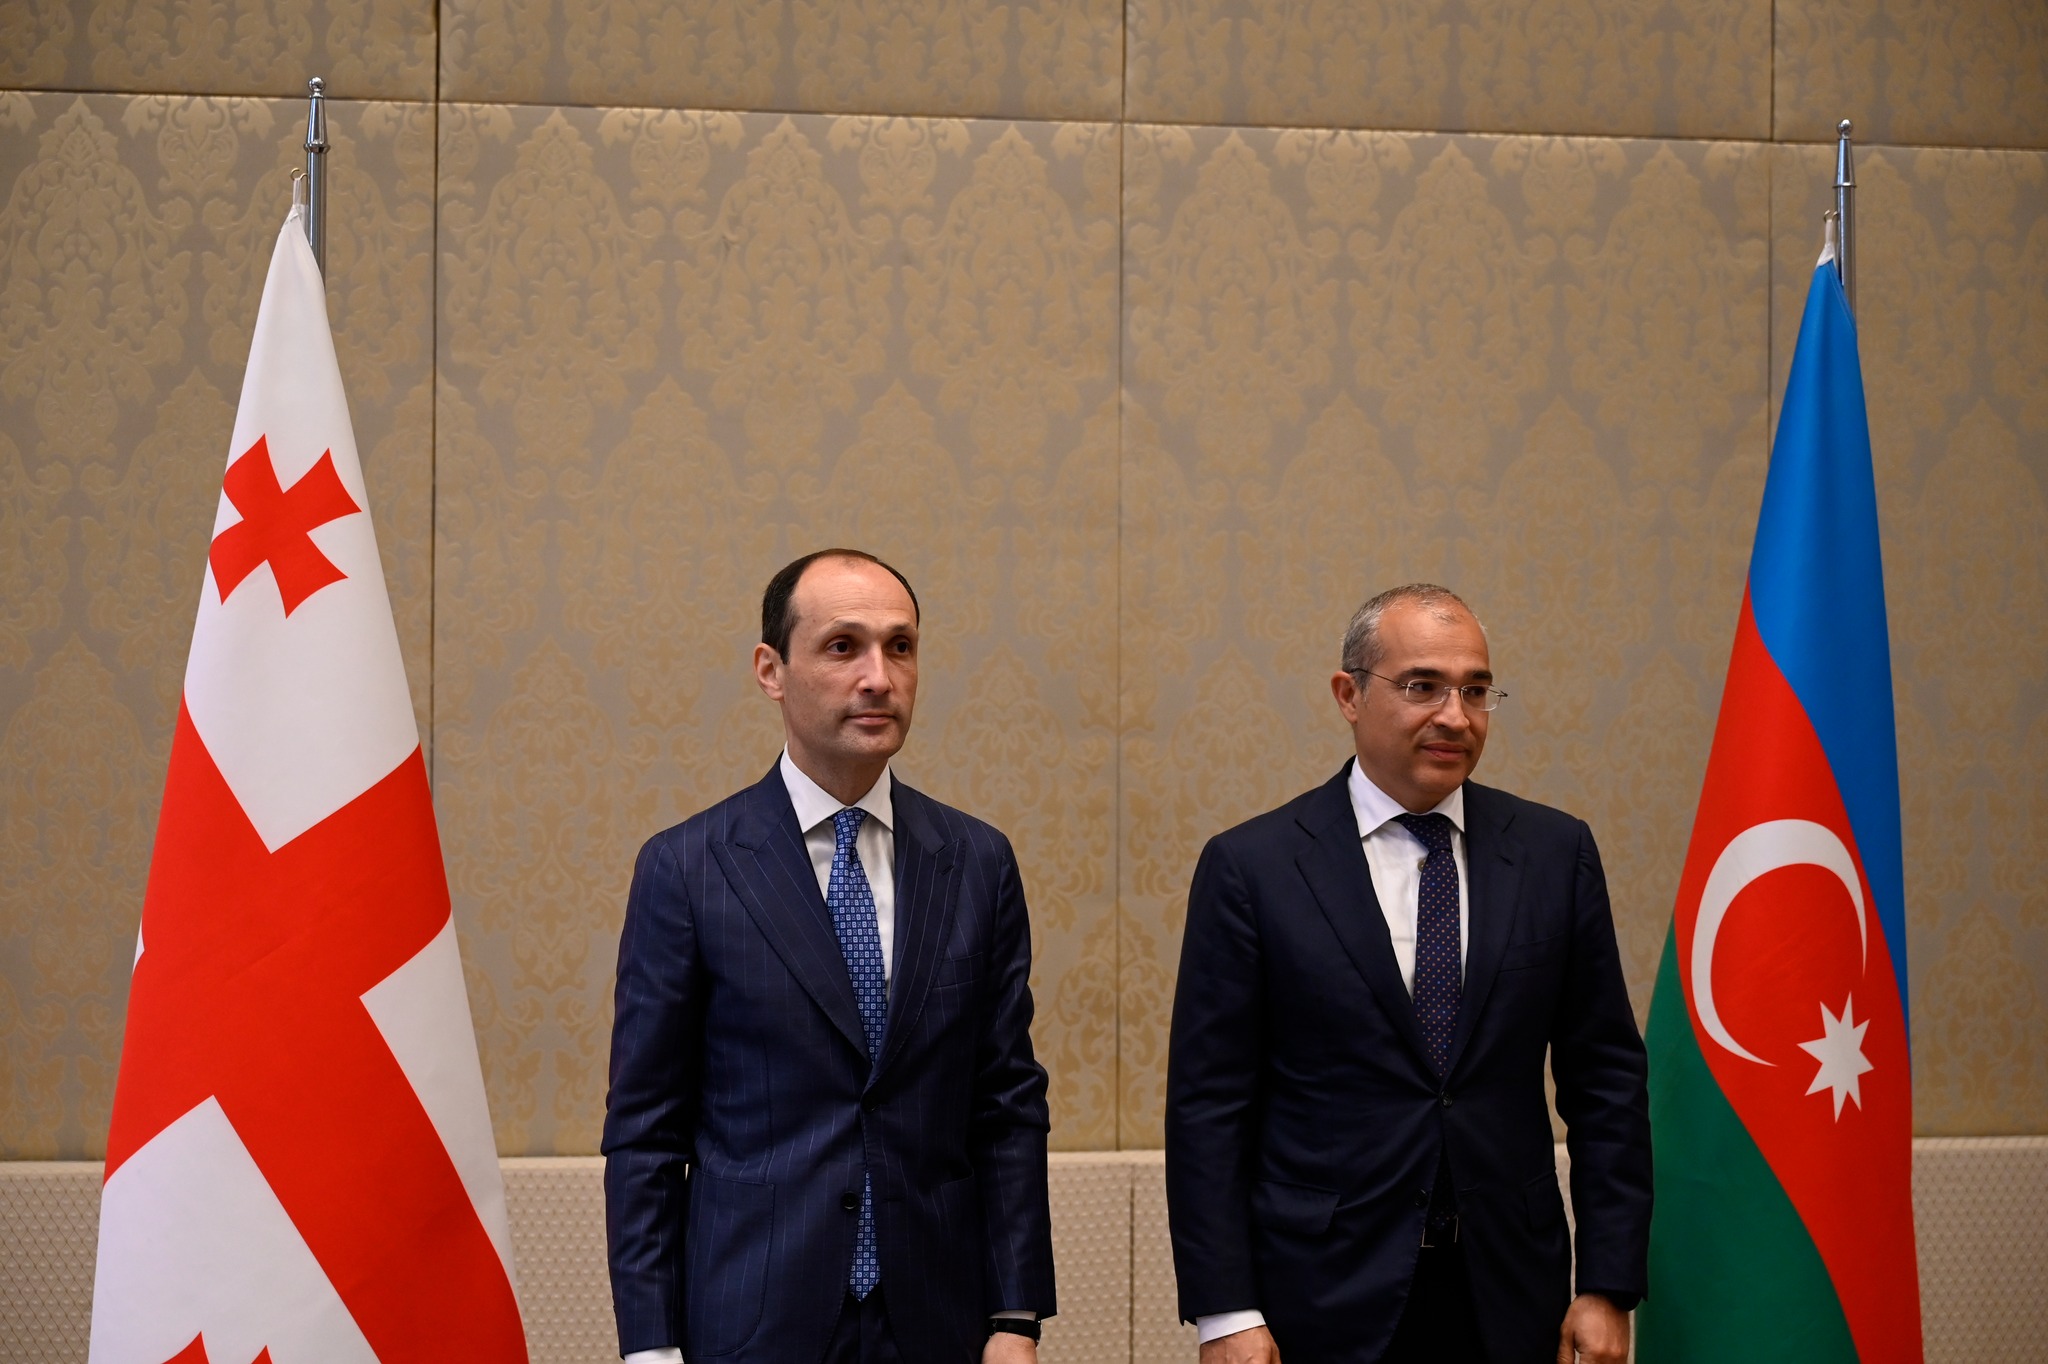 Georgia: Economy Minister Levan Davitashvili meets his Azerbaijani counterpart Mikayil Jabbarov